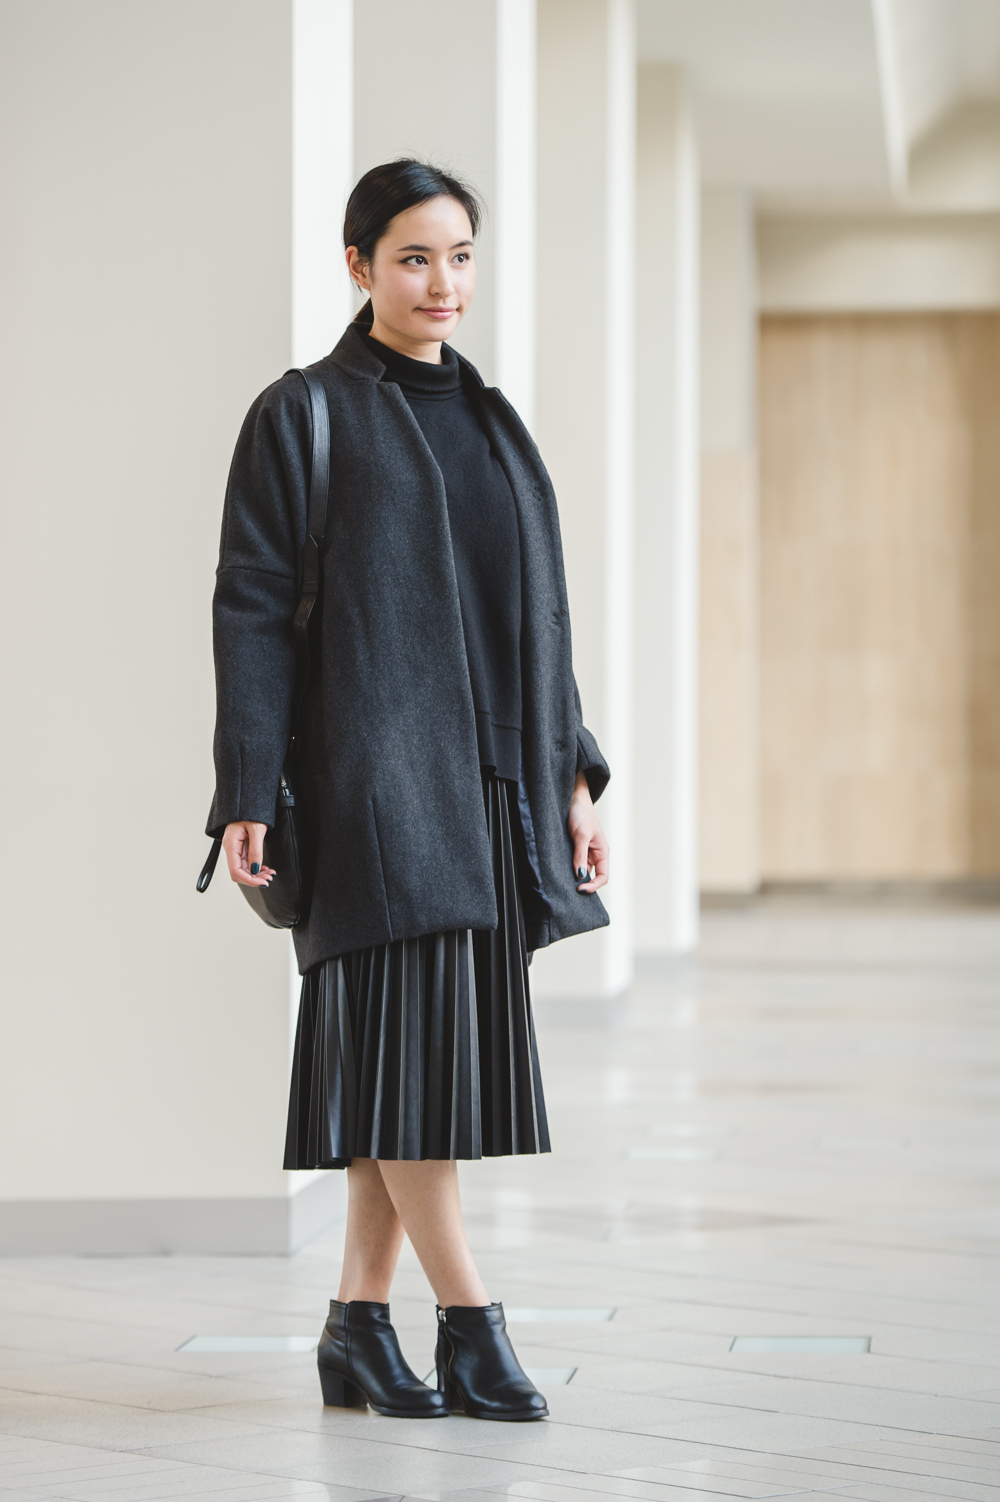 street-style-black-pleated-skirt